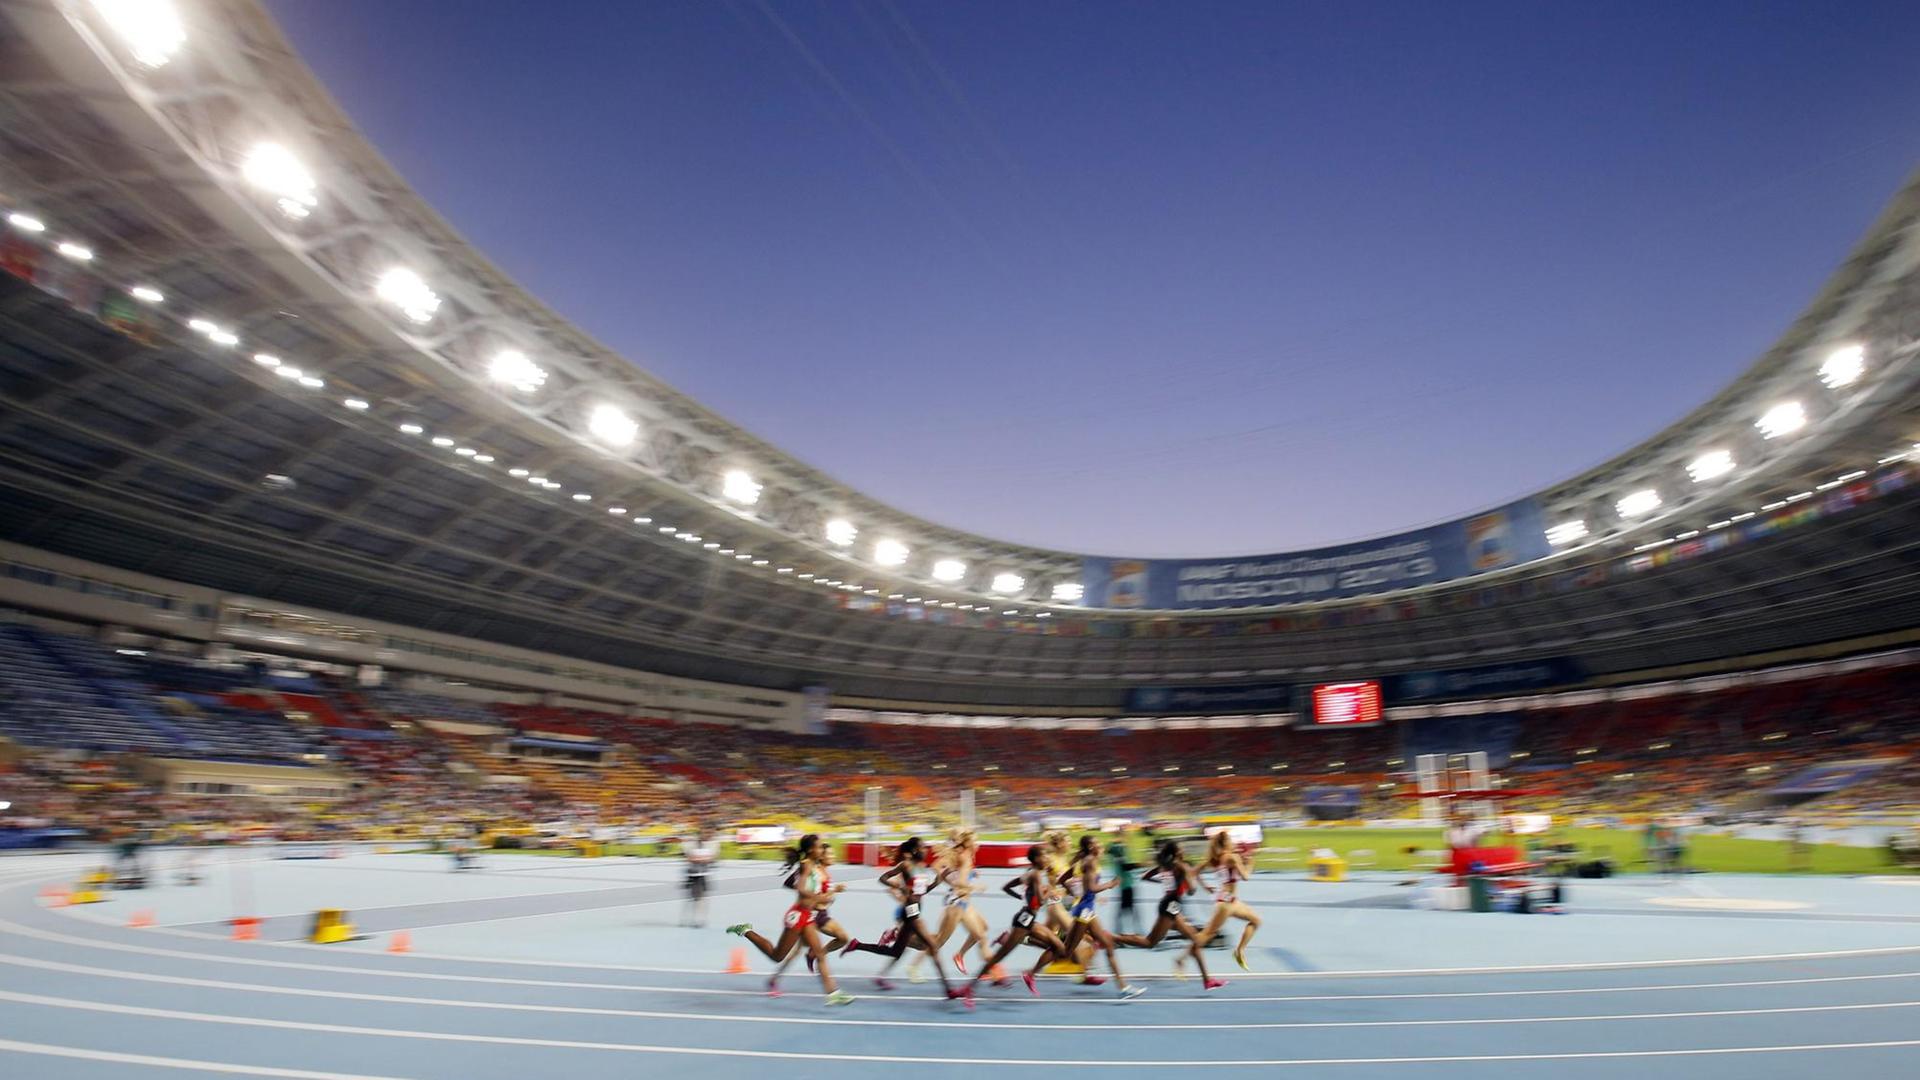 Leichtathletik - Weltverband hebt Doping-Sperre gegen Russland unter Auflagen auf - weiter keine Teilnahme an Wettbewerben